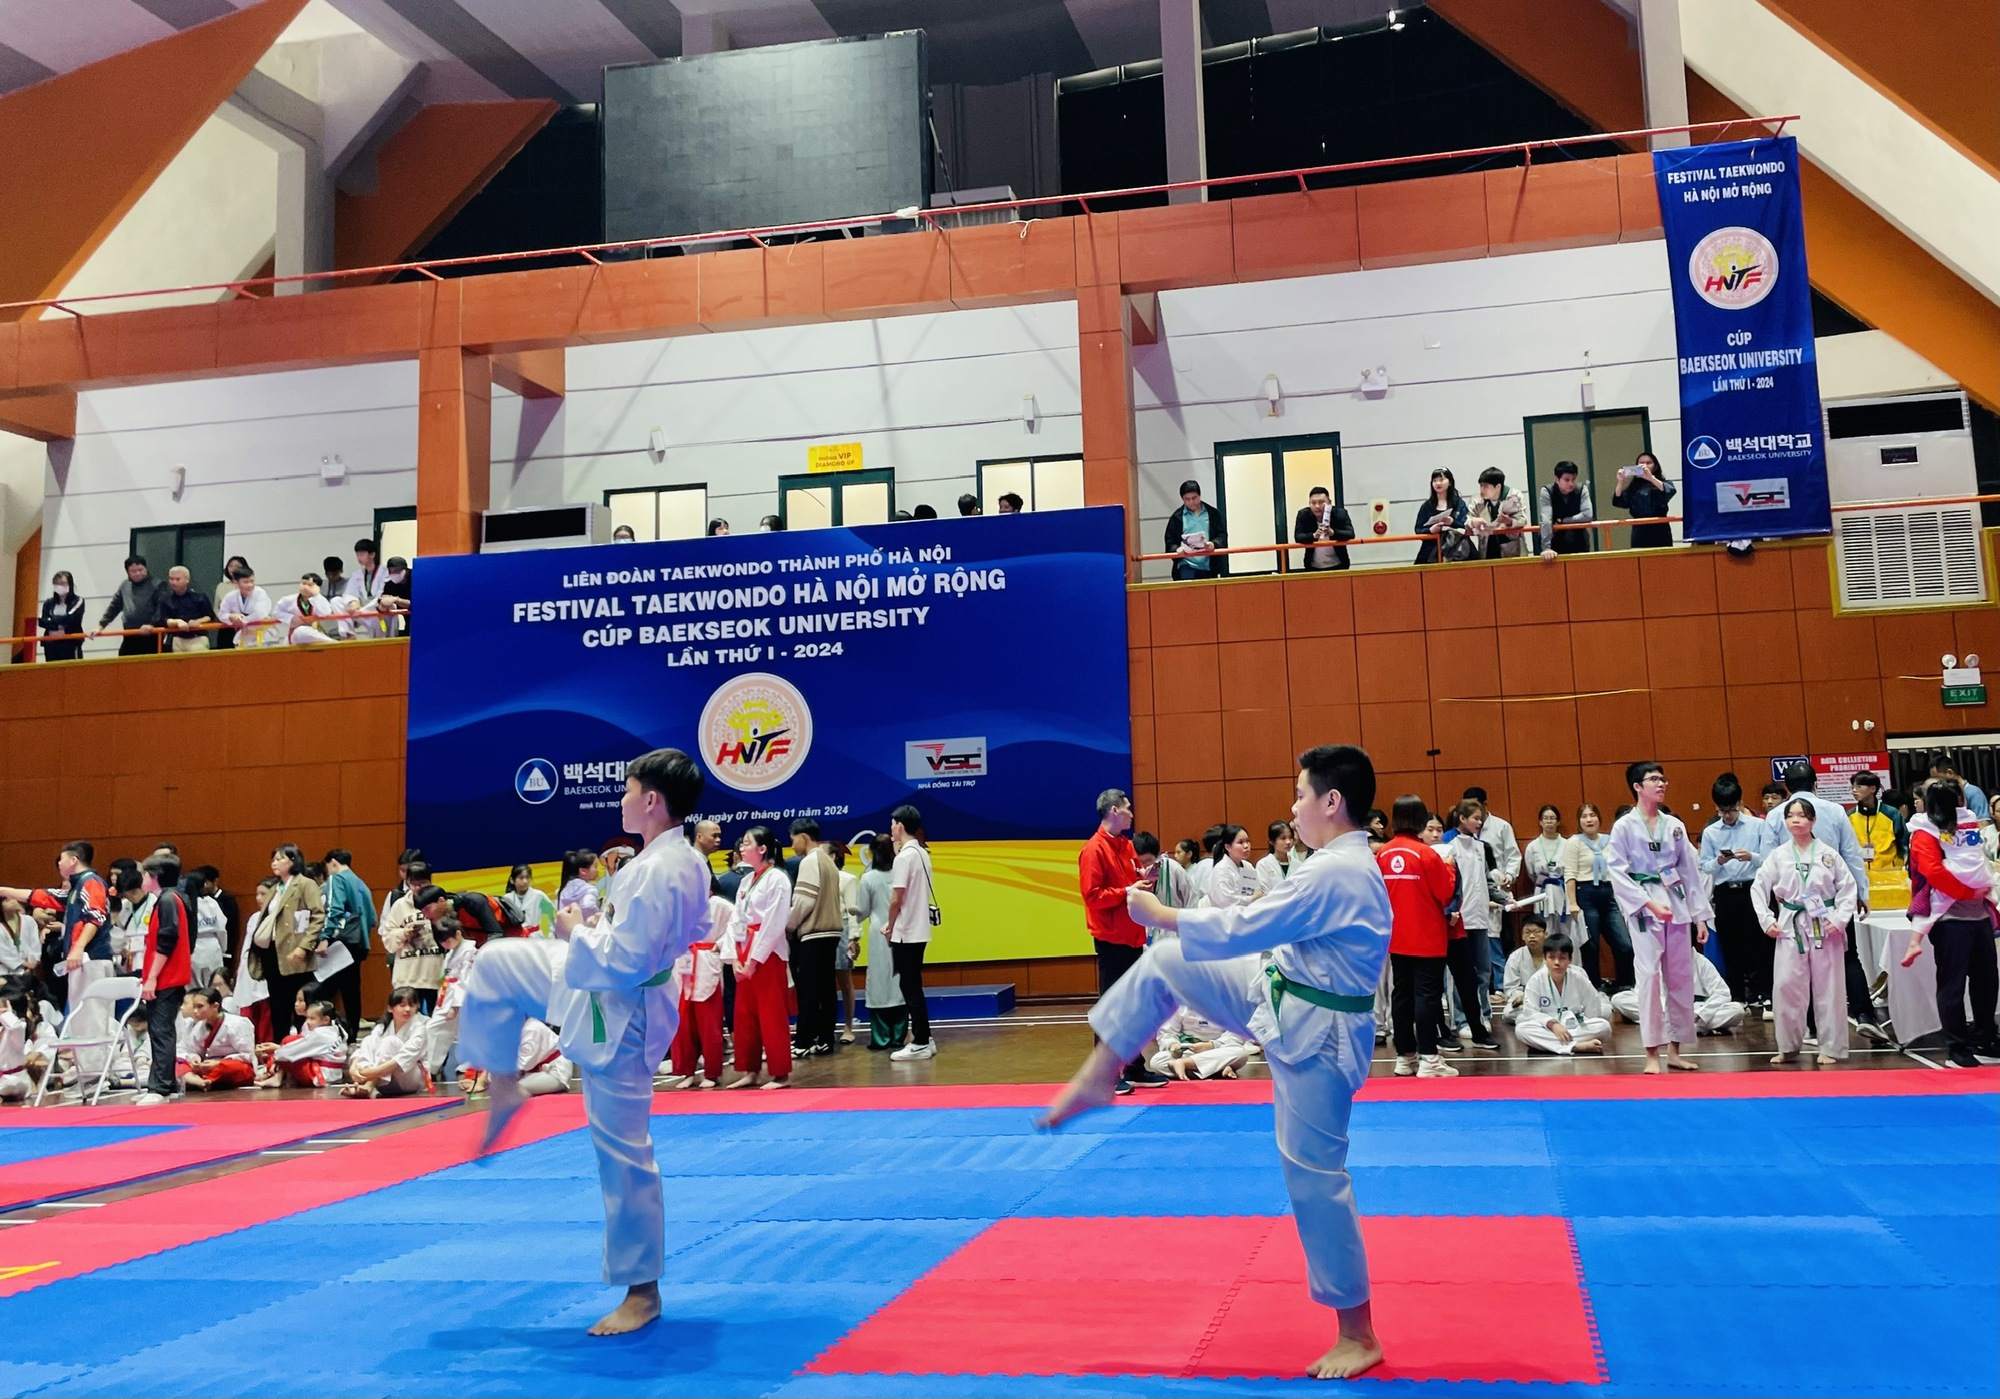 Võ sĩ bịt mắt tung quyền ảo diệu tại Festival Taekwondo Hà Nội mở rộng- Ảnh 3.